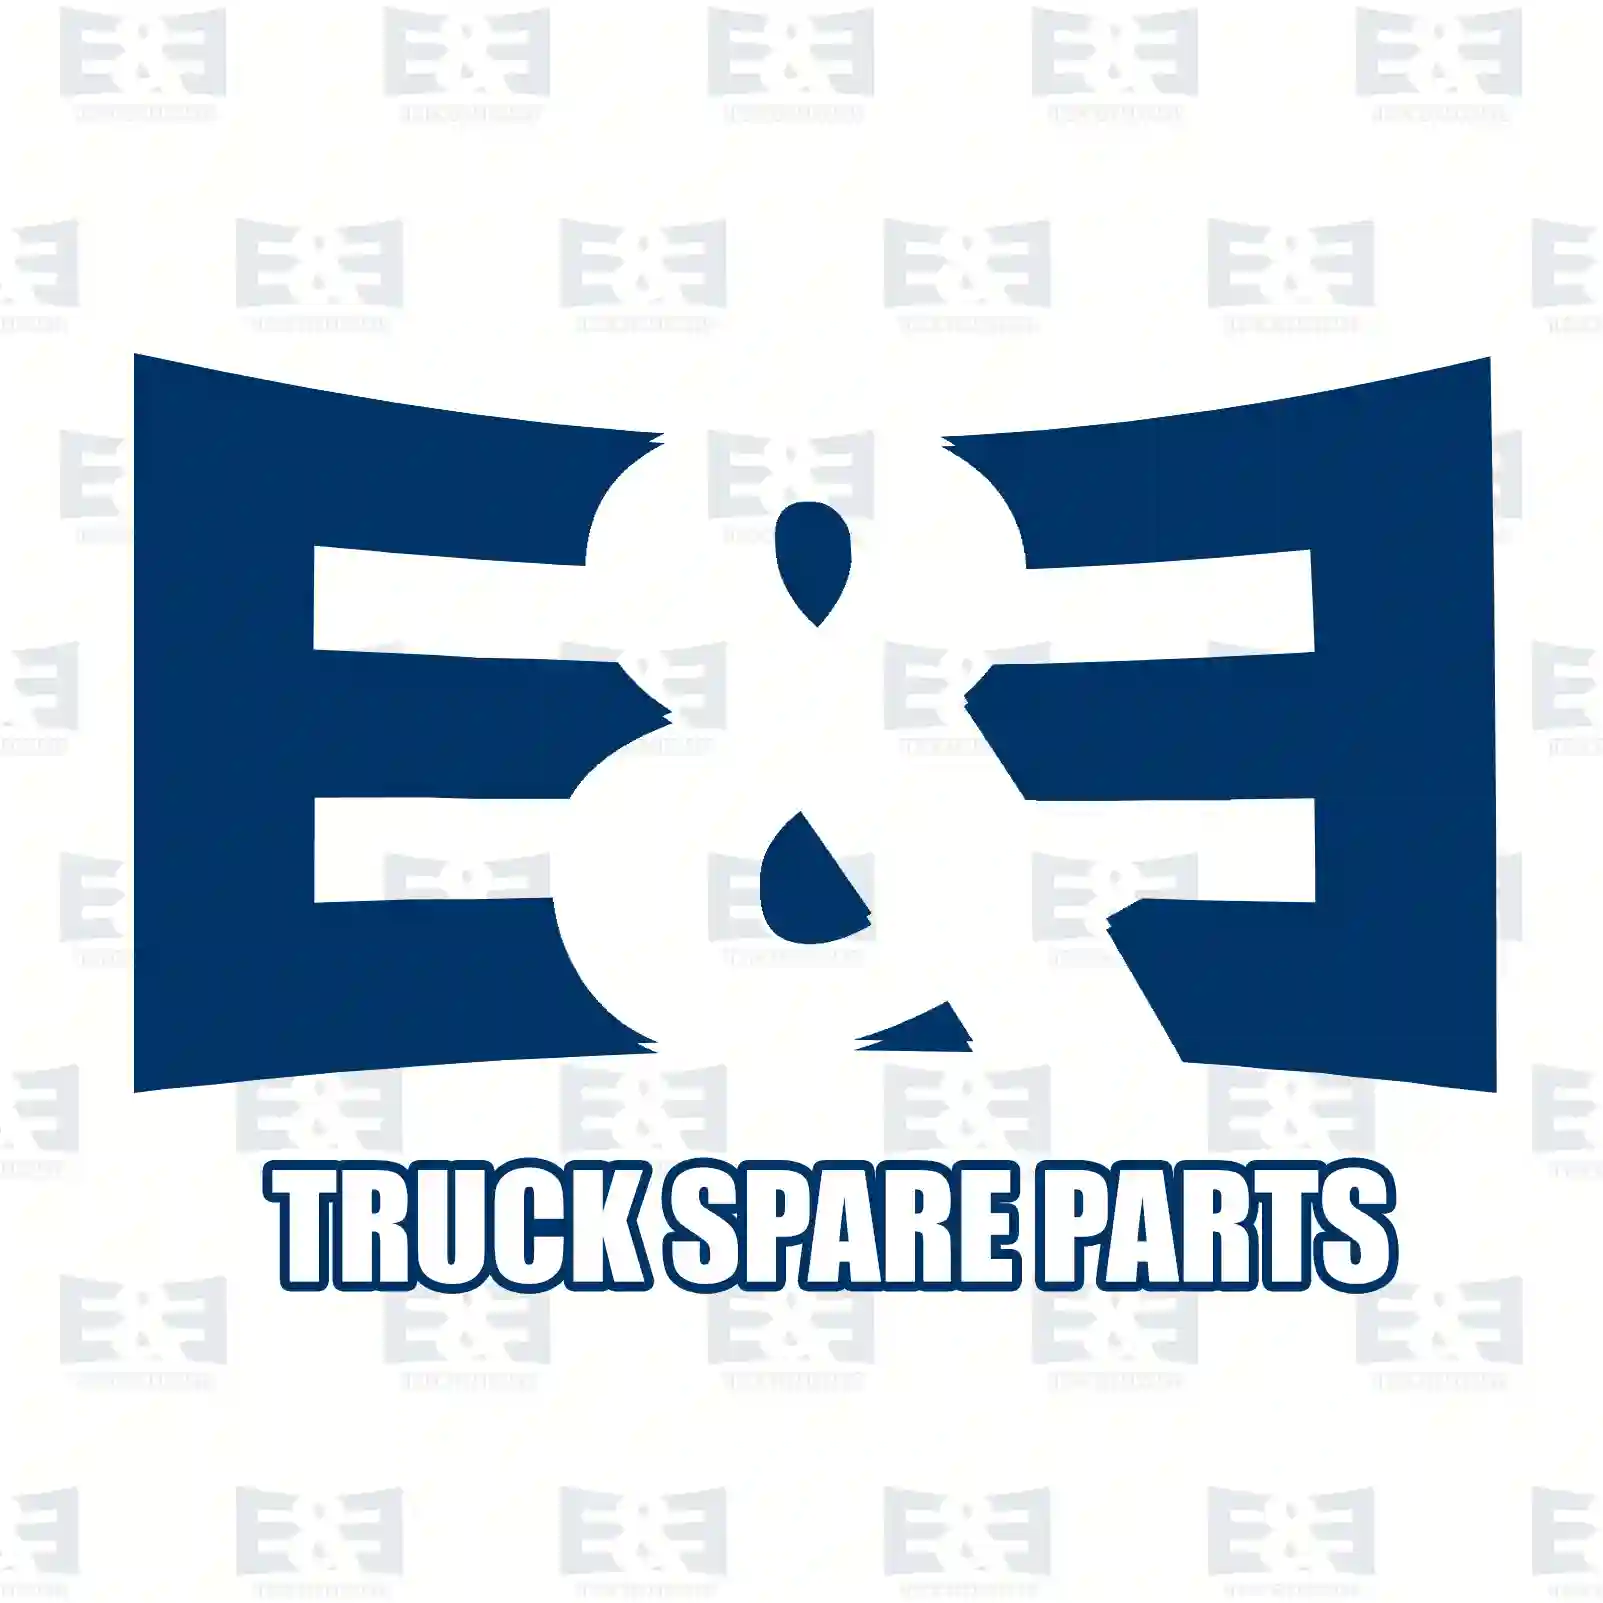 Filter kit, 2E2208420, 0000901251S, 0000901551S, 0001801609S, 0004771702S3, 9041800009S, 9041800210S, 9060900051S, 9060920105S, 9060920205S, 9060920305S, 9060920505S ||  2E2208420 E&E Truck Spare Parts | Truck Spare Parts, Auotomotive Spare Parts Filter kit, 2E2208420, 0000901251S, 0000901551S, 0001801609S, 0004771702S3, 9041800009S, 9041800210S, 9060900051S, 9060920105S, 9060920205S, 9060920305S, 9060920505S ||  2E2208420 E&E Truck Spare Parts | Truck Spare Parts, Auotomotive Spare Parts